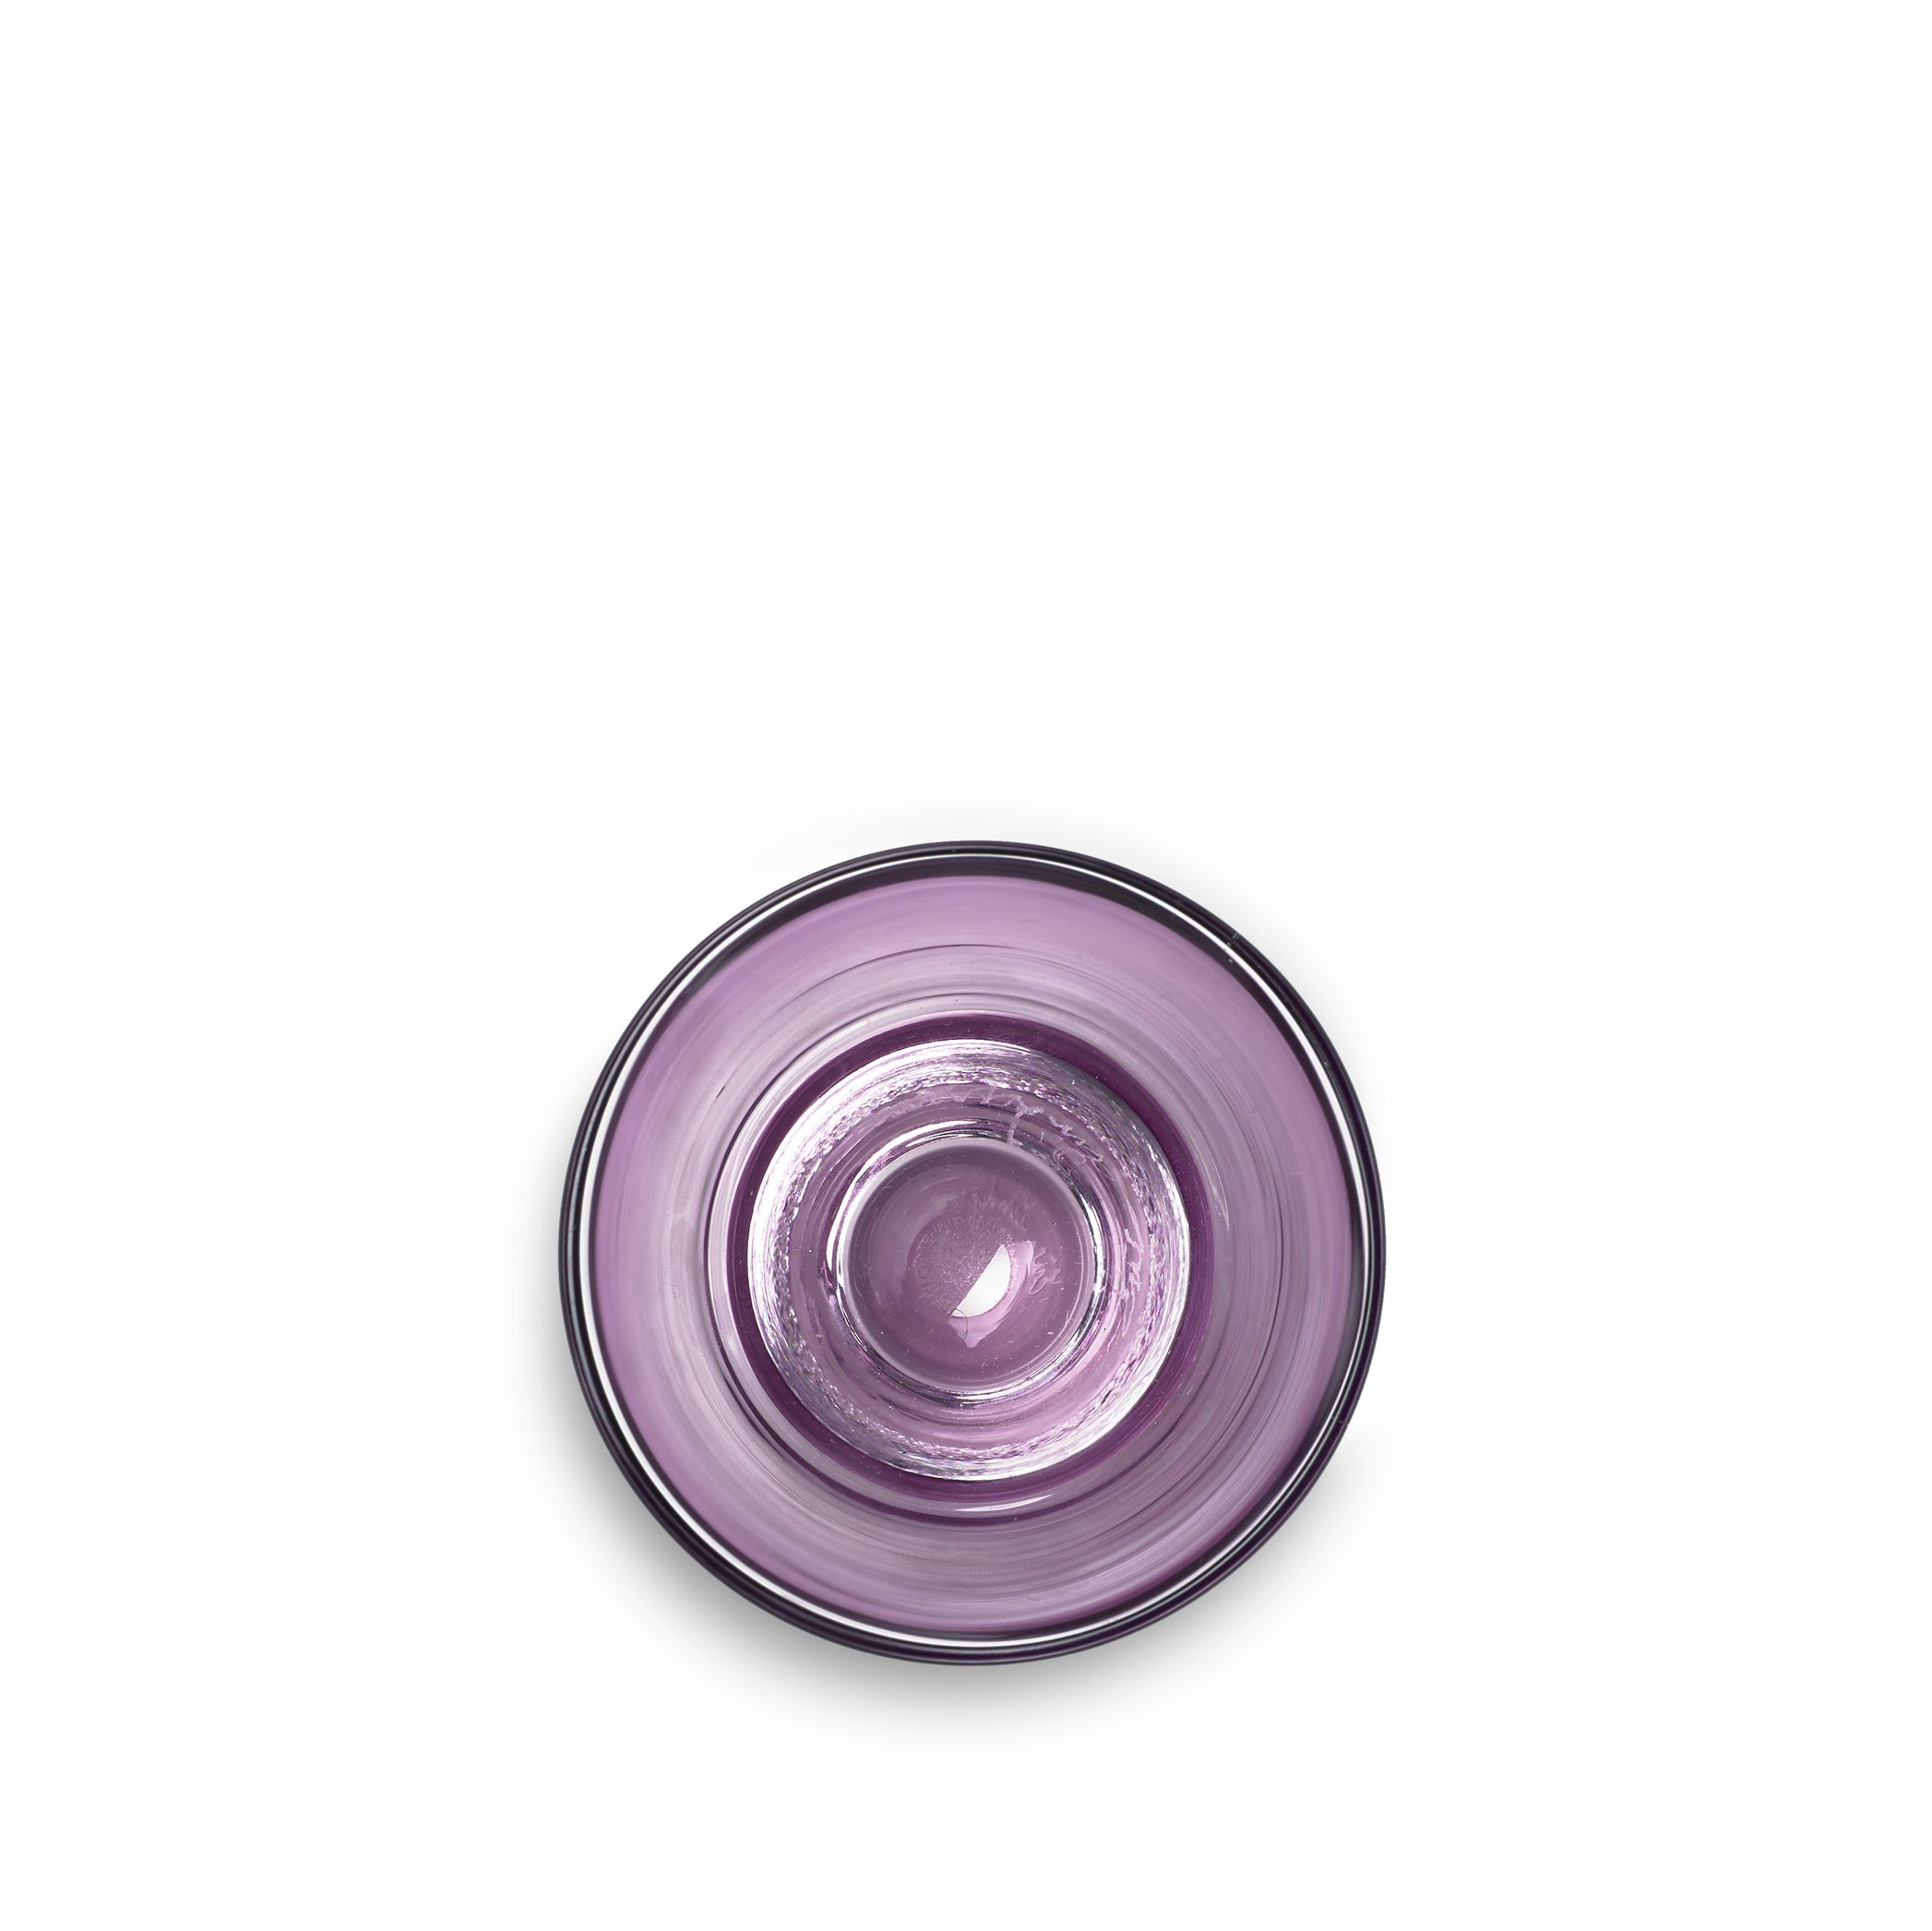 Handblown Clair Glass in Grape Purple, 20cl